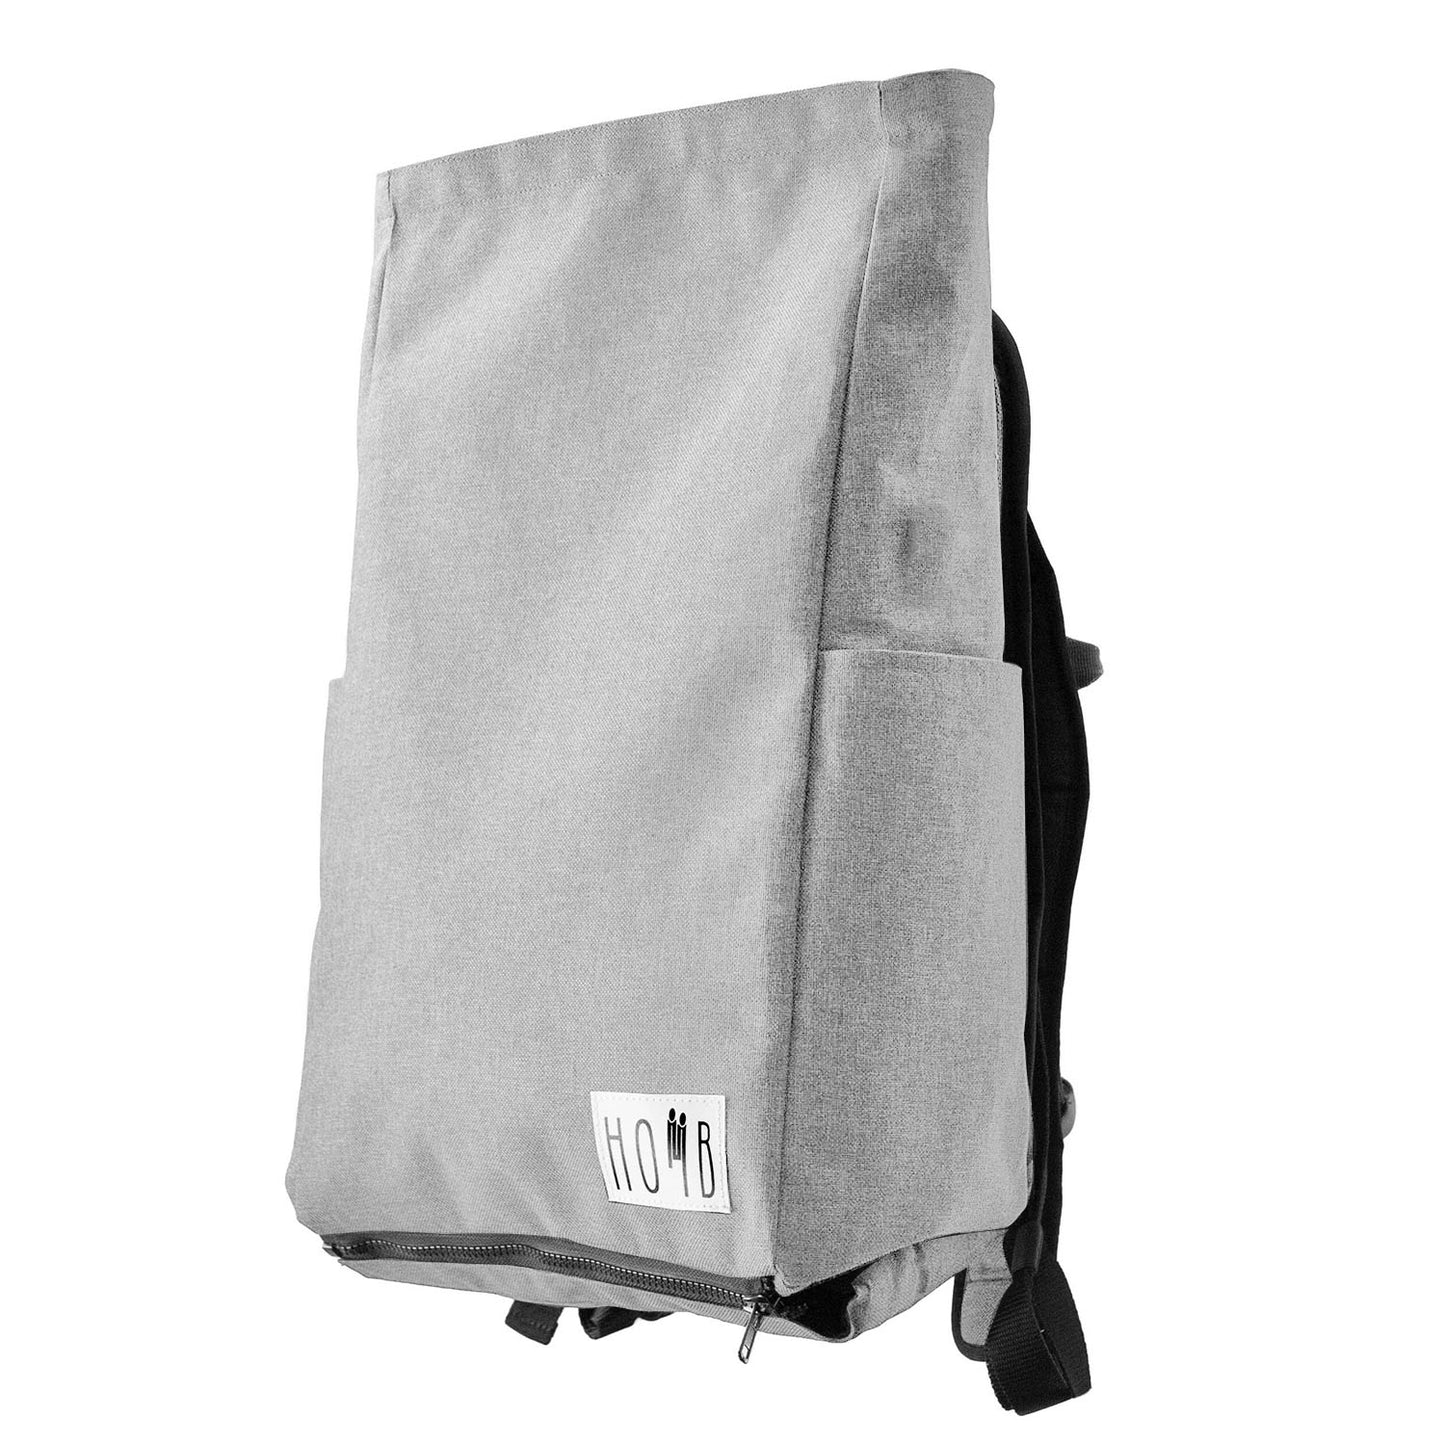 HOMB - Rucksack mit Rückentrage - Kindertrage ab 2 Jahre bis 25 kg